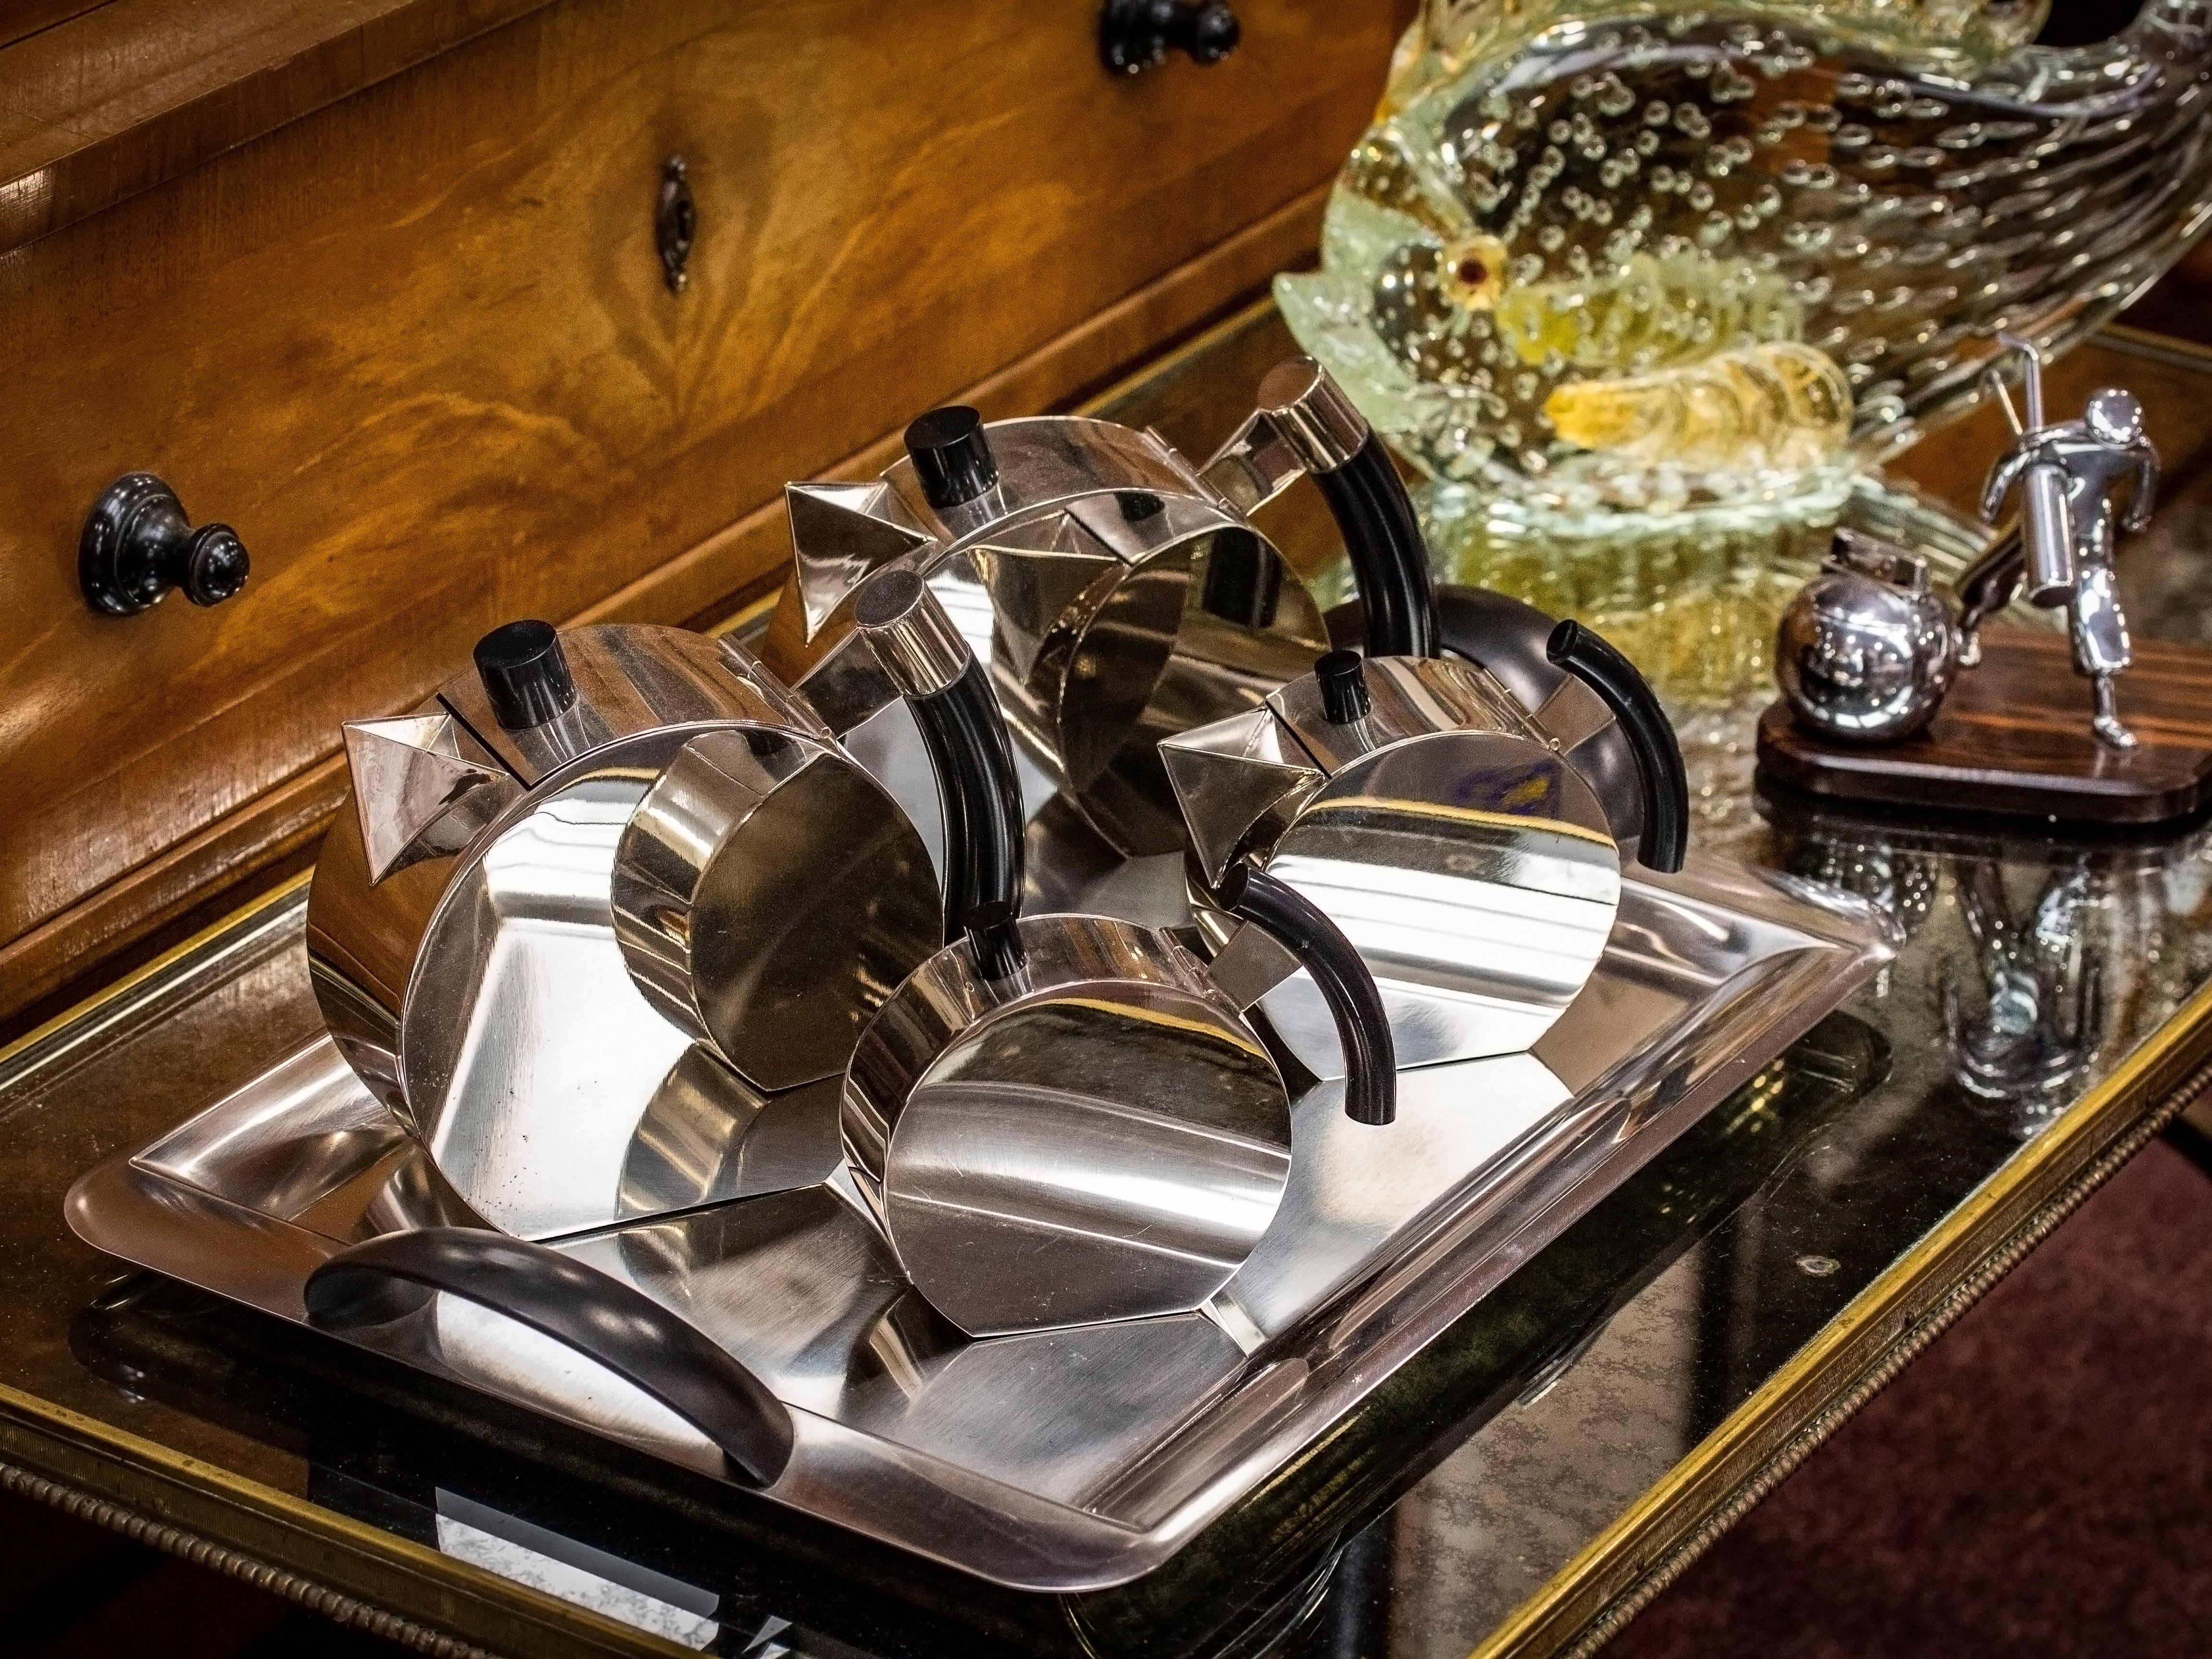 Entworfen von Punta Bacola für Montagnani

Aus unserer Accessories-Kollektion bieten wir Ihnen dieses äußerst stilvolle Teeservice im Art Deco-Stil an. Das Service besteht aus einer Tee- und Kaffeekanne, einem Milchkännchen und einem Zuckergefäß auf